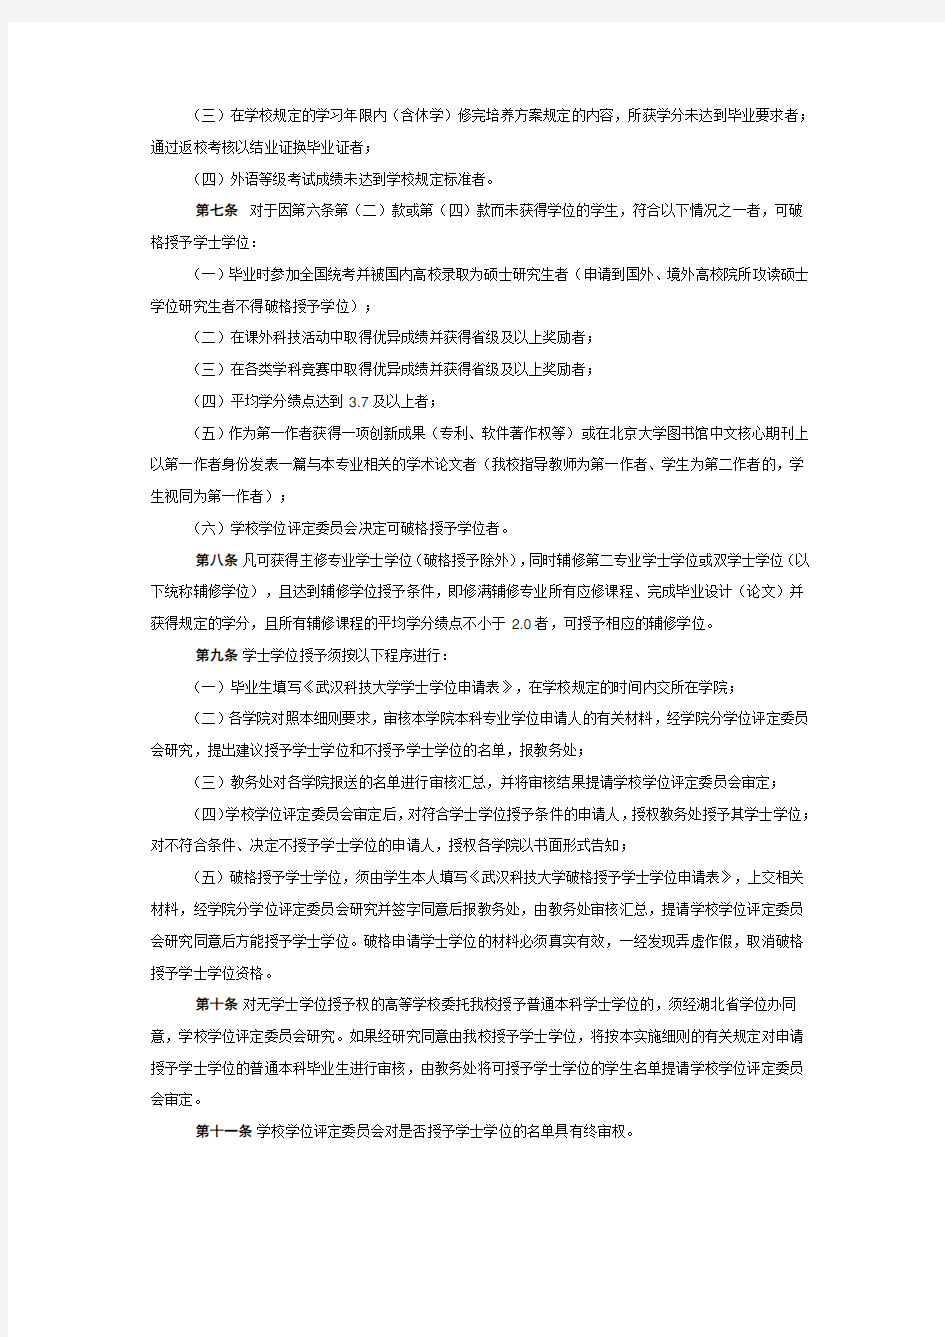 武汉科技大学普通本科学生学士学位授予实施细则